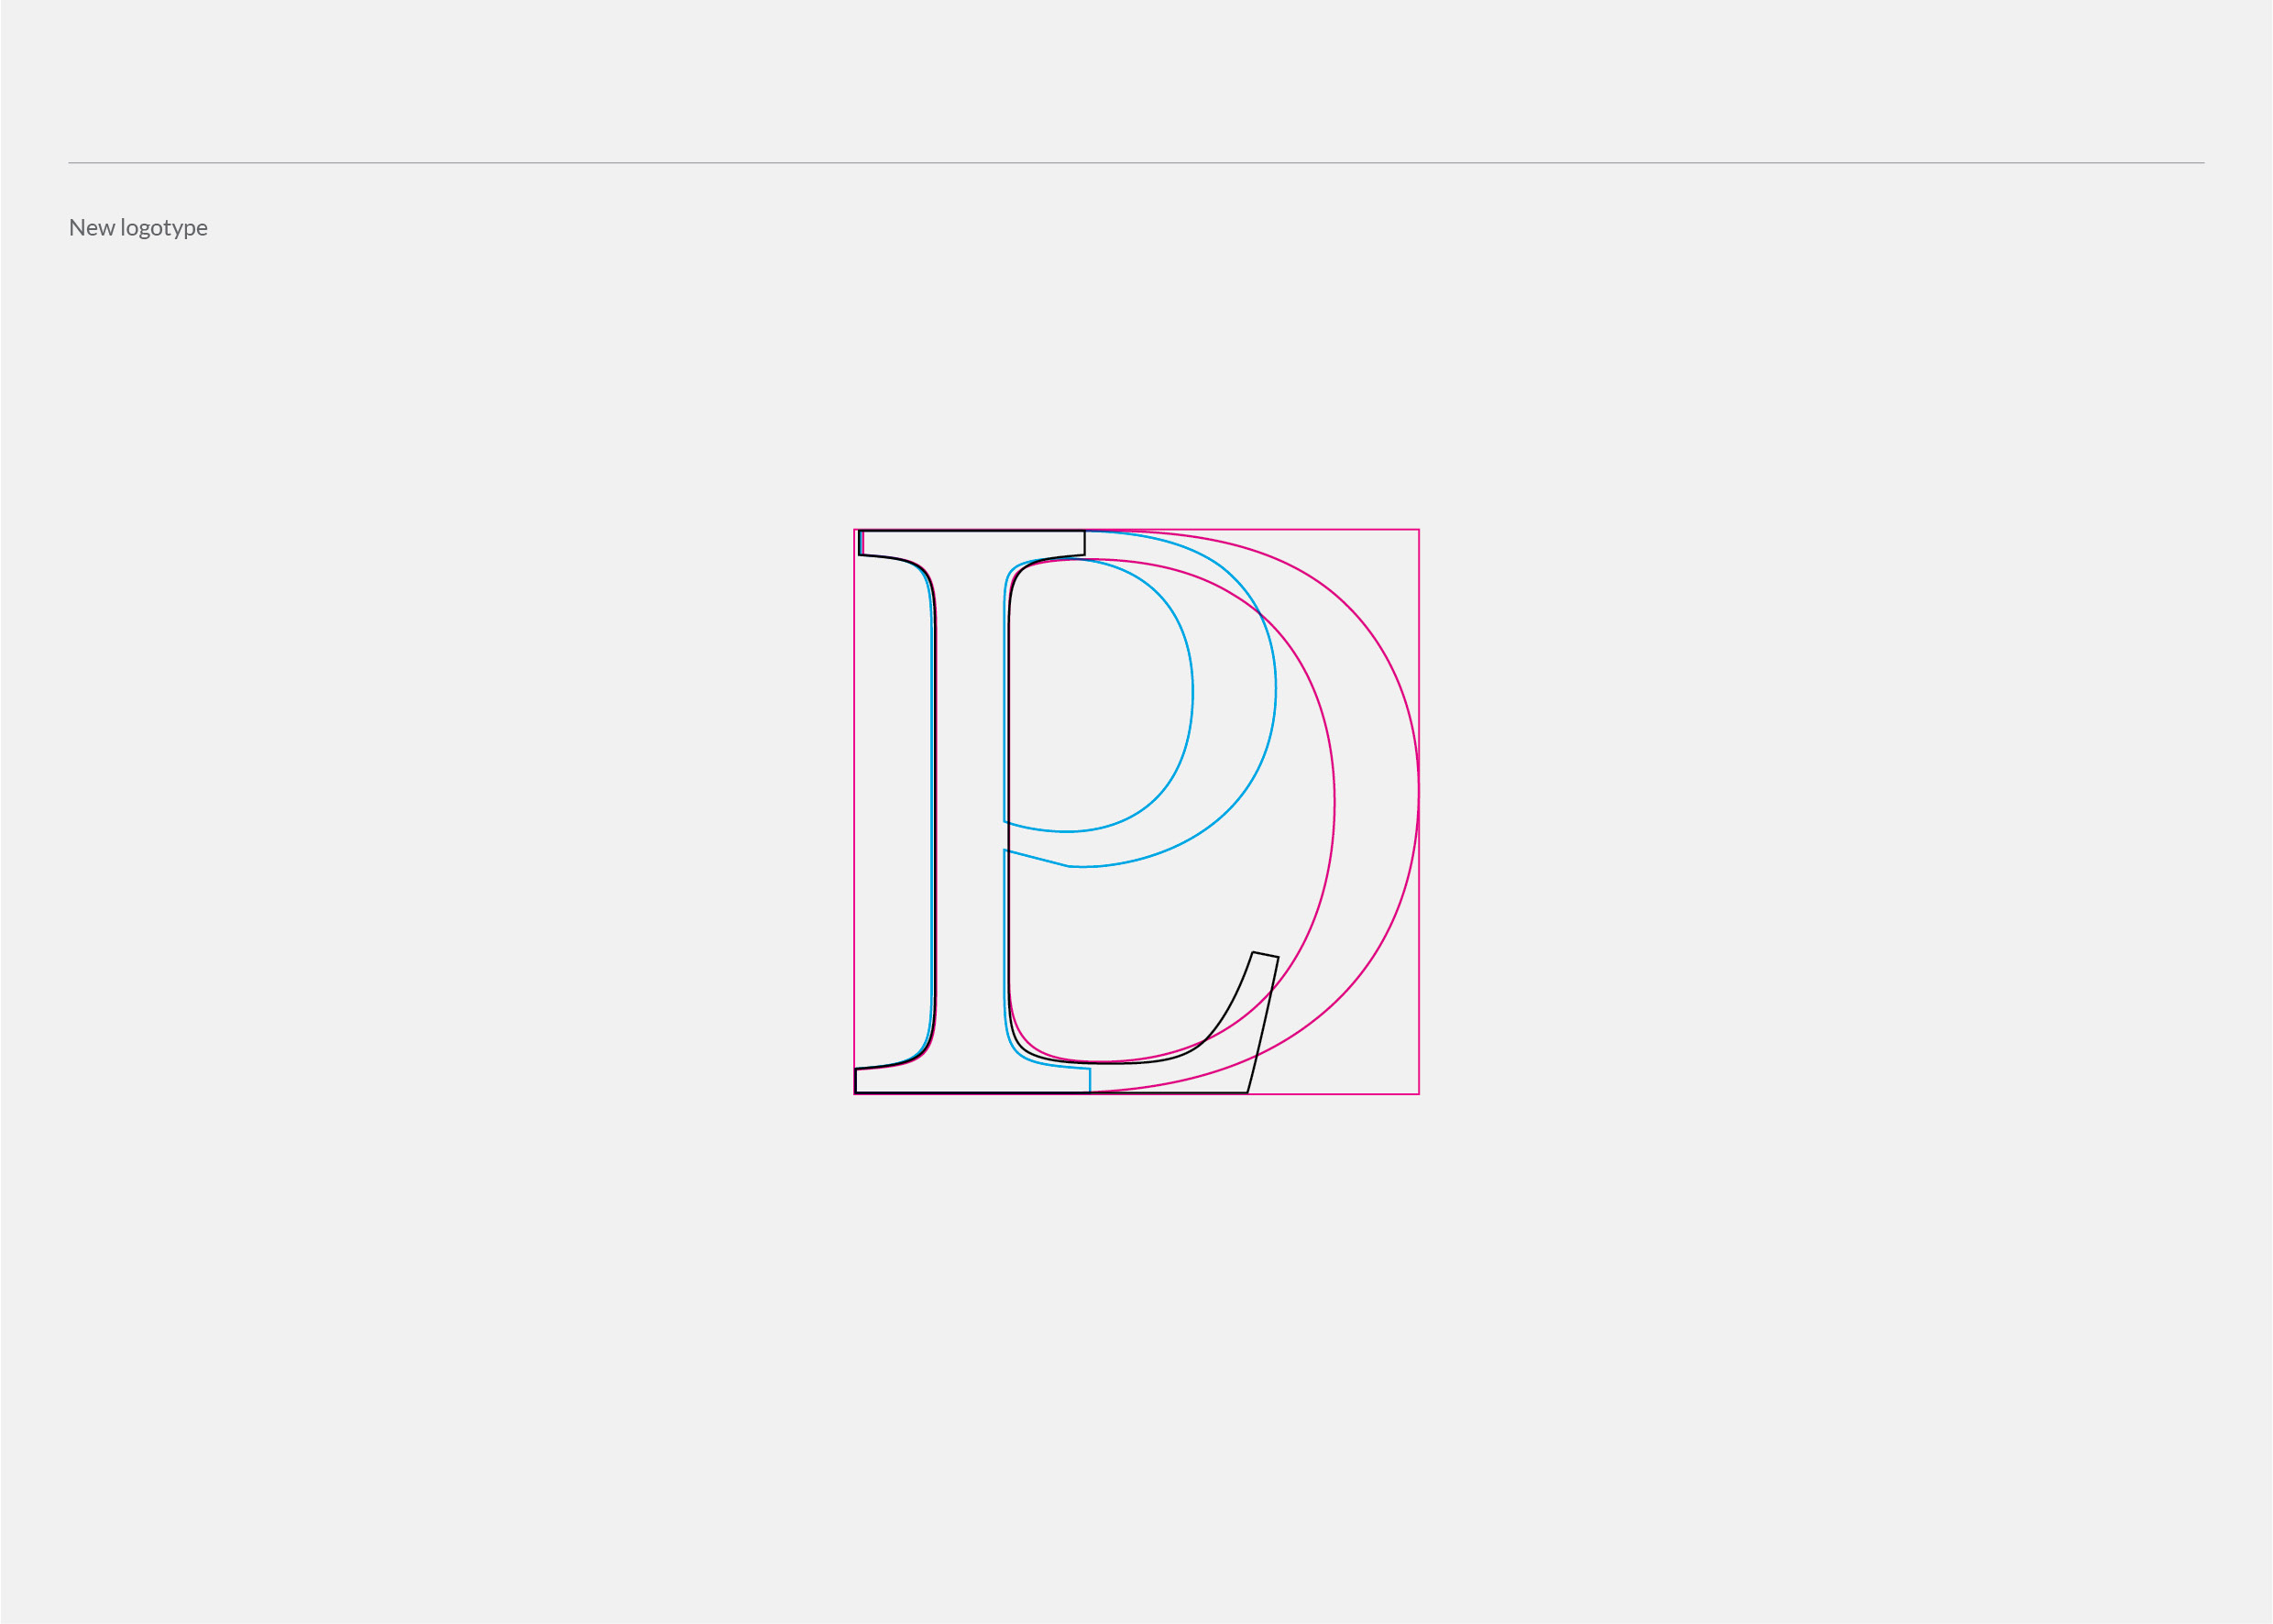 LDP logotype portofolio2